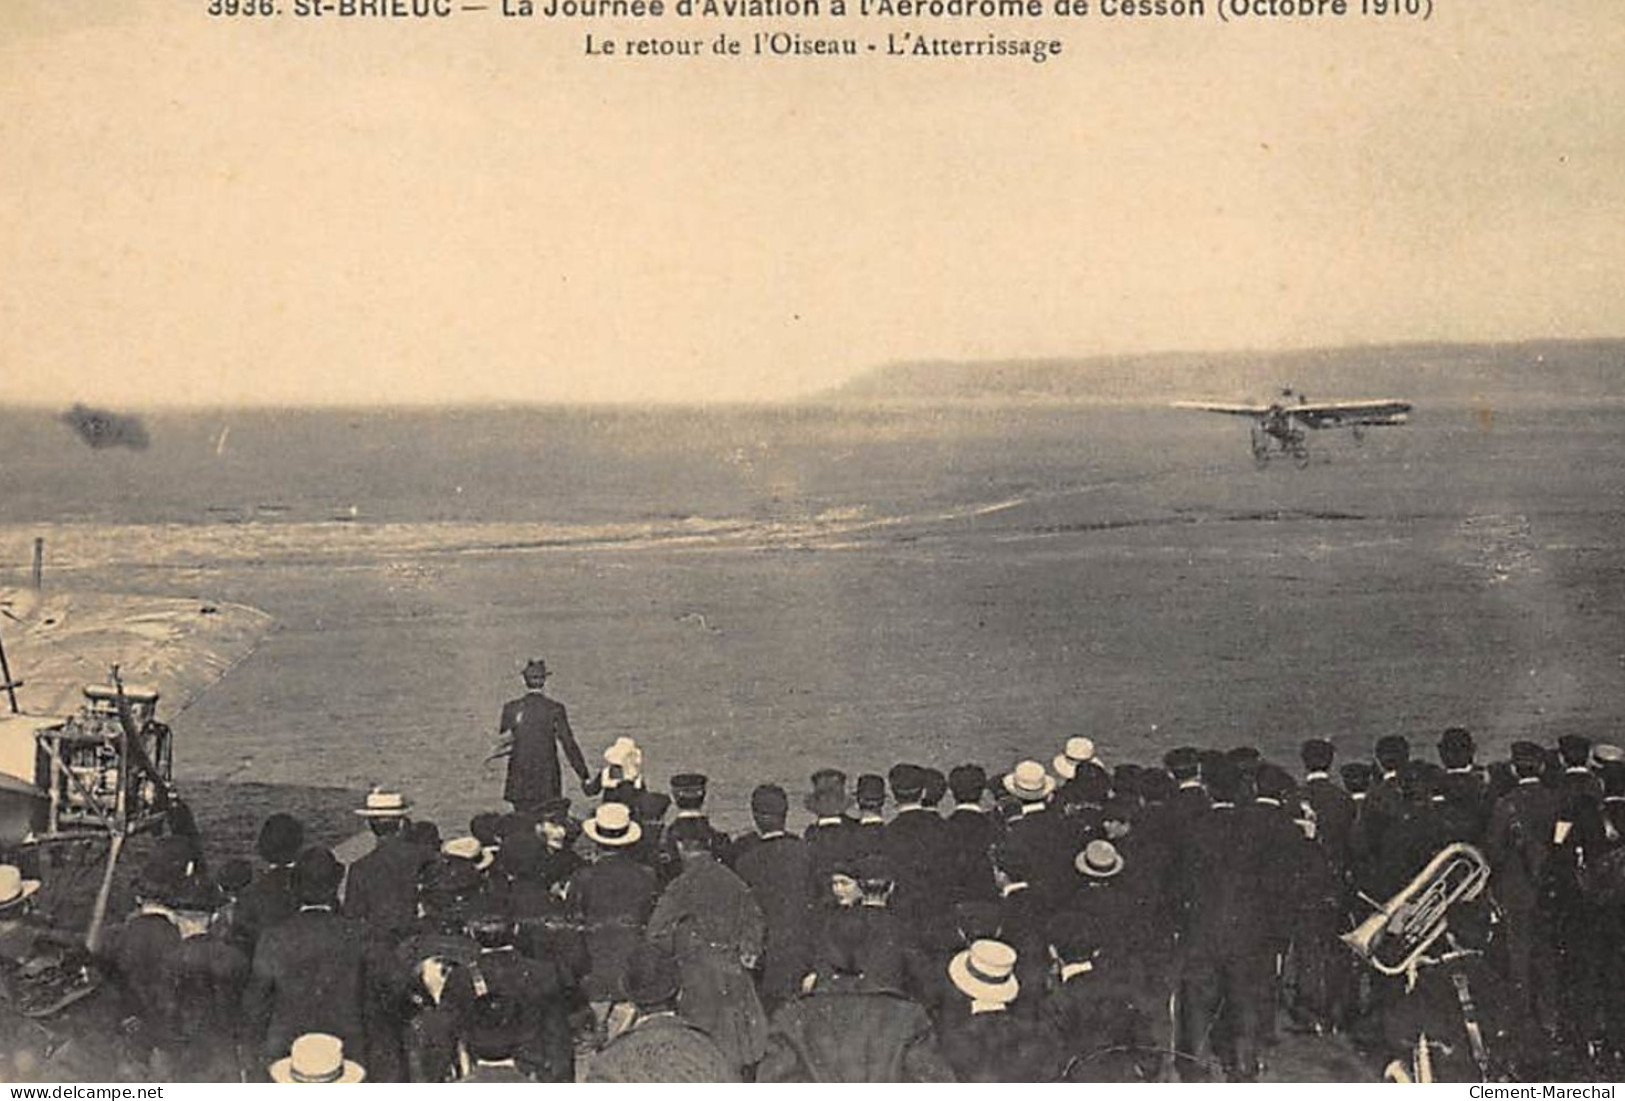 SAINT-BRIEUC : La Journée D'aviation à L'aérodrome De Cesson Octobre 1910 Le Retour De L'oiseau - Tres Bon Etat - Saint-Brieuc